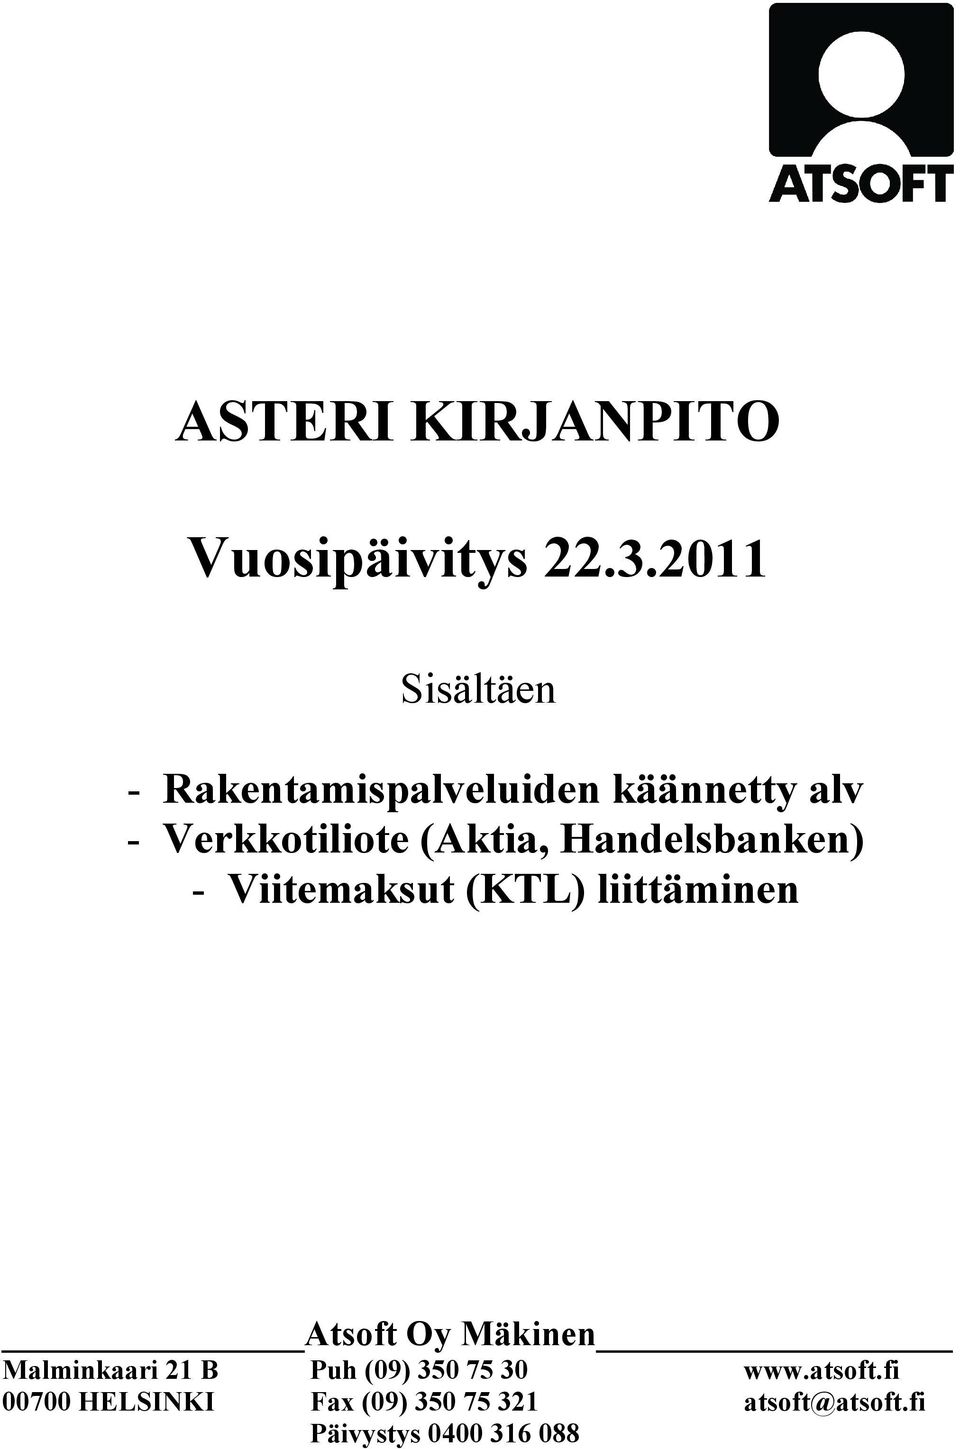 (Aktia, Handelsbanken) - Viitemaksut (KTL) liittäminen Atsoft Oy Mäkinen